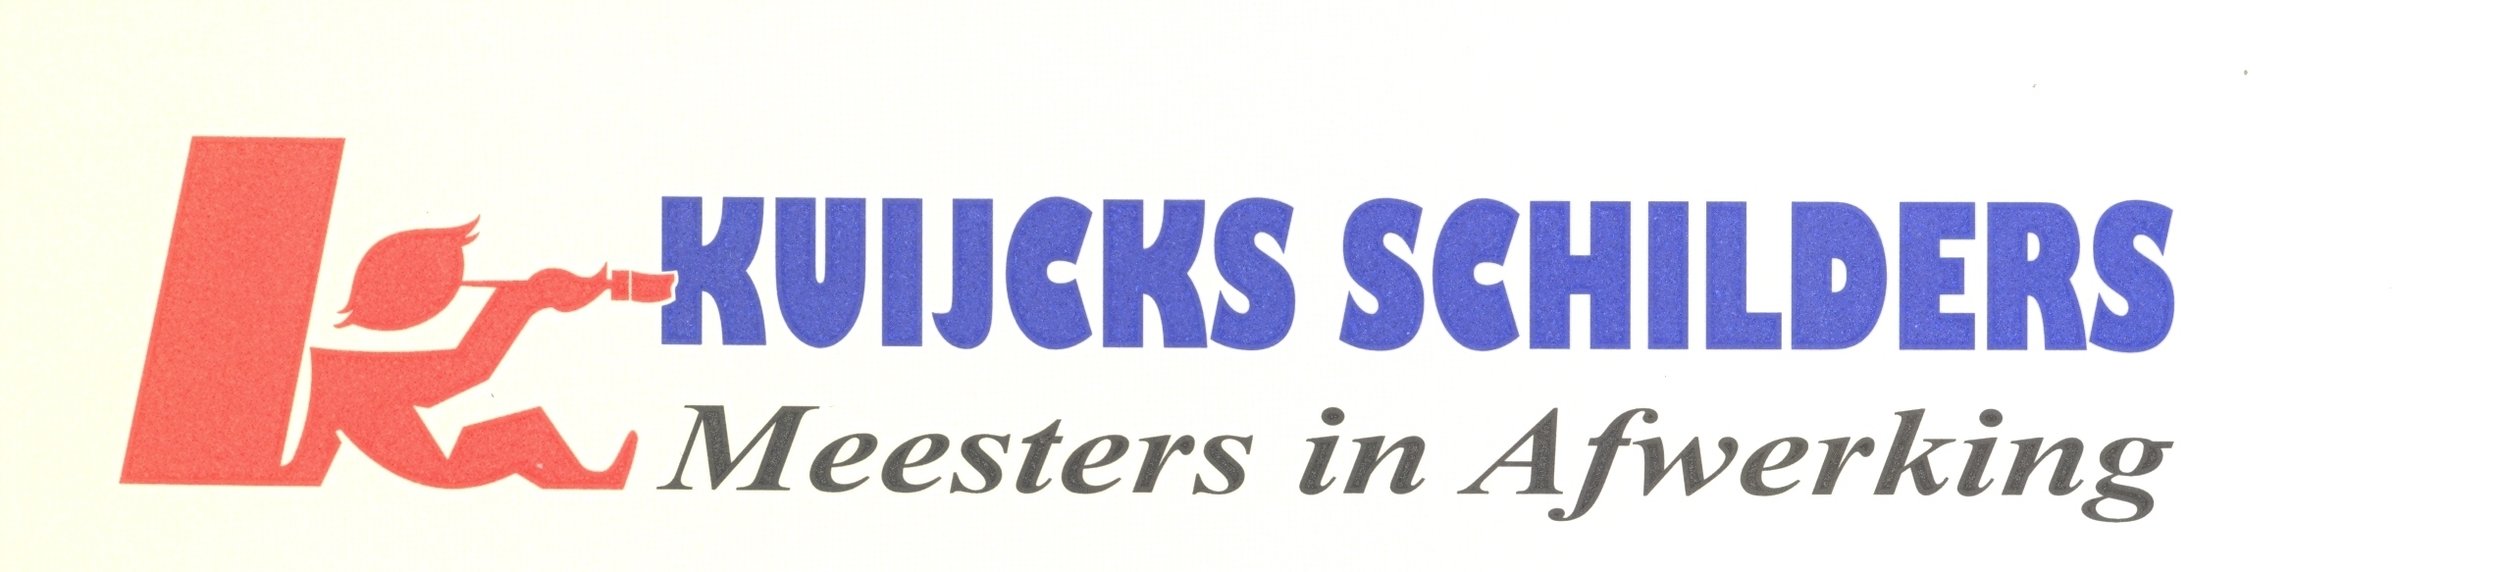 Kuijcks logo.jpg